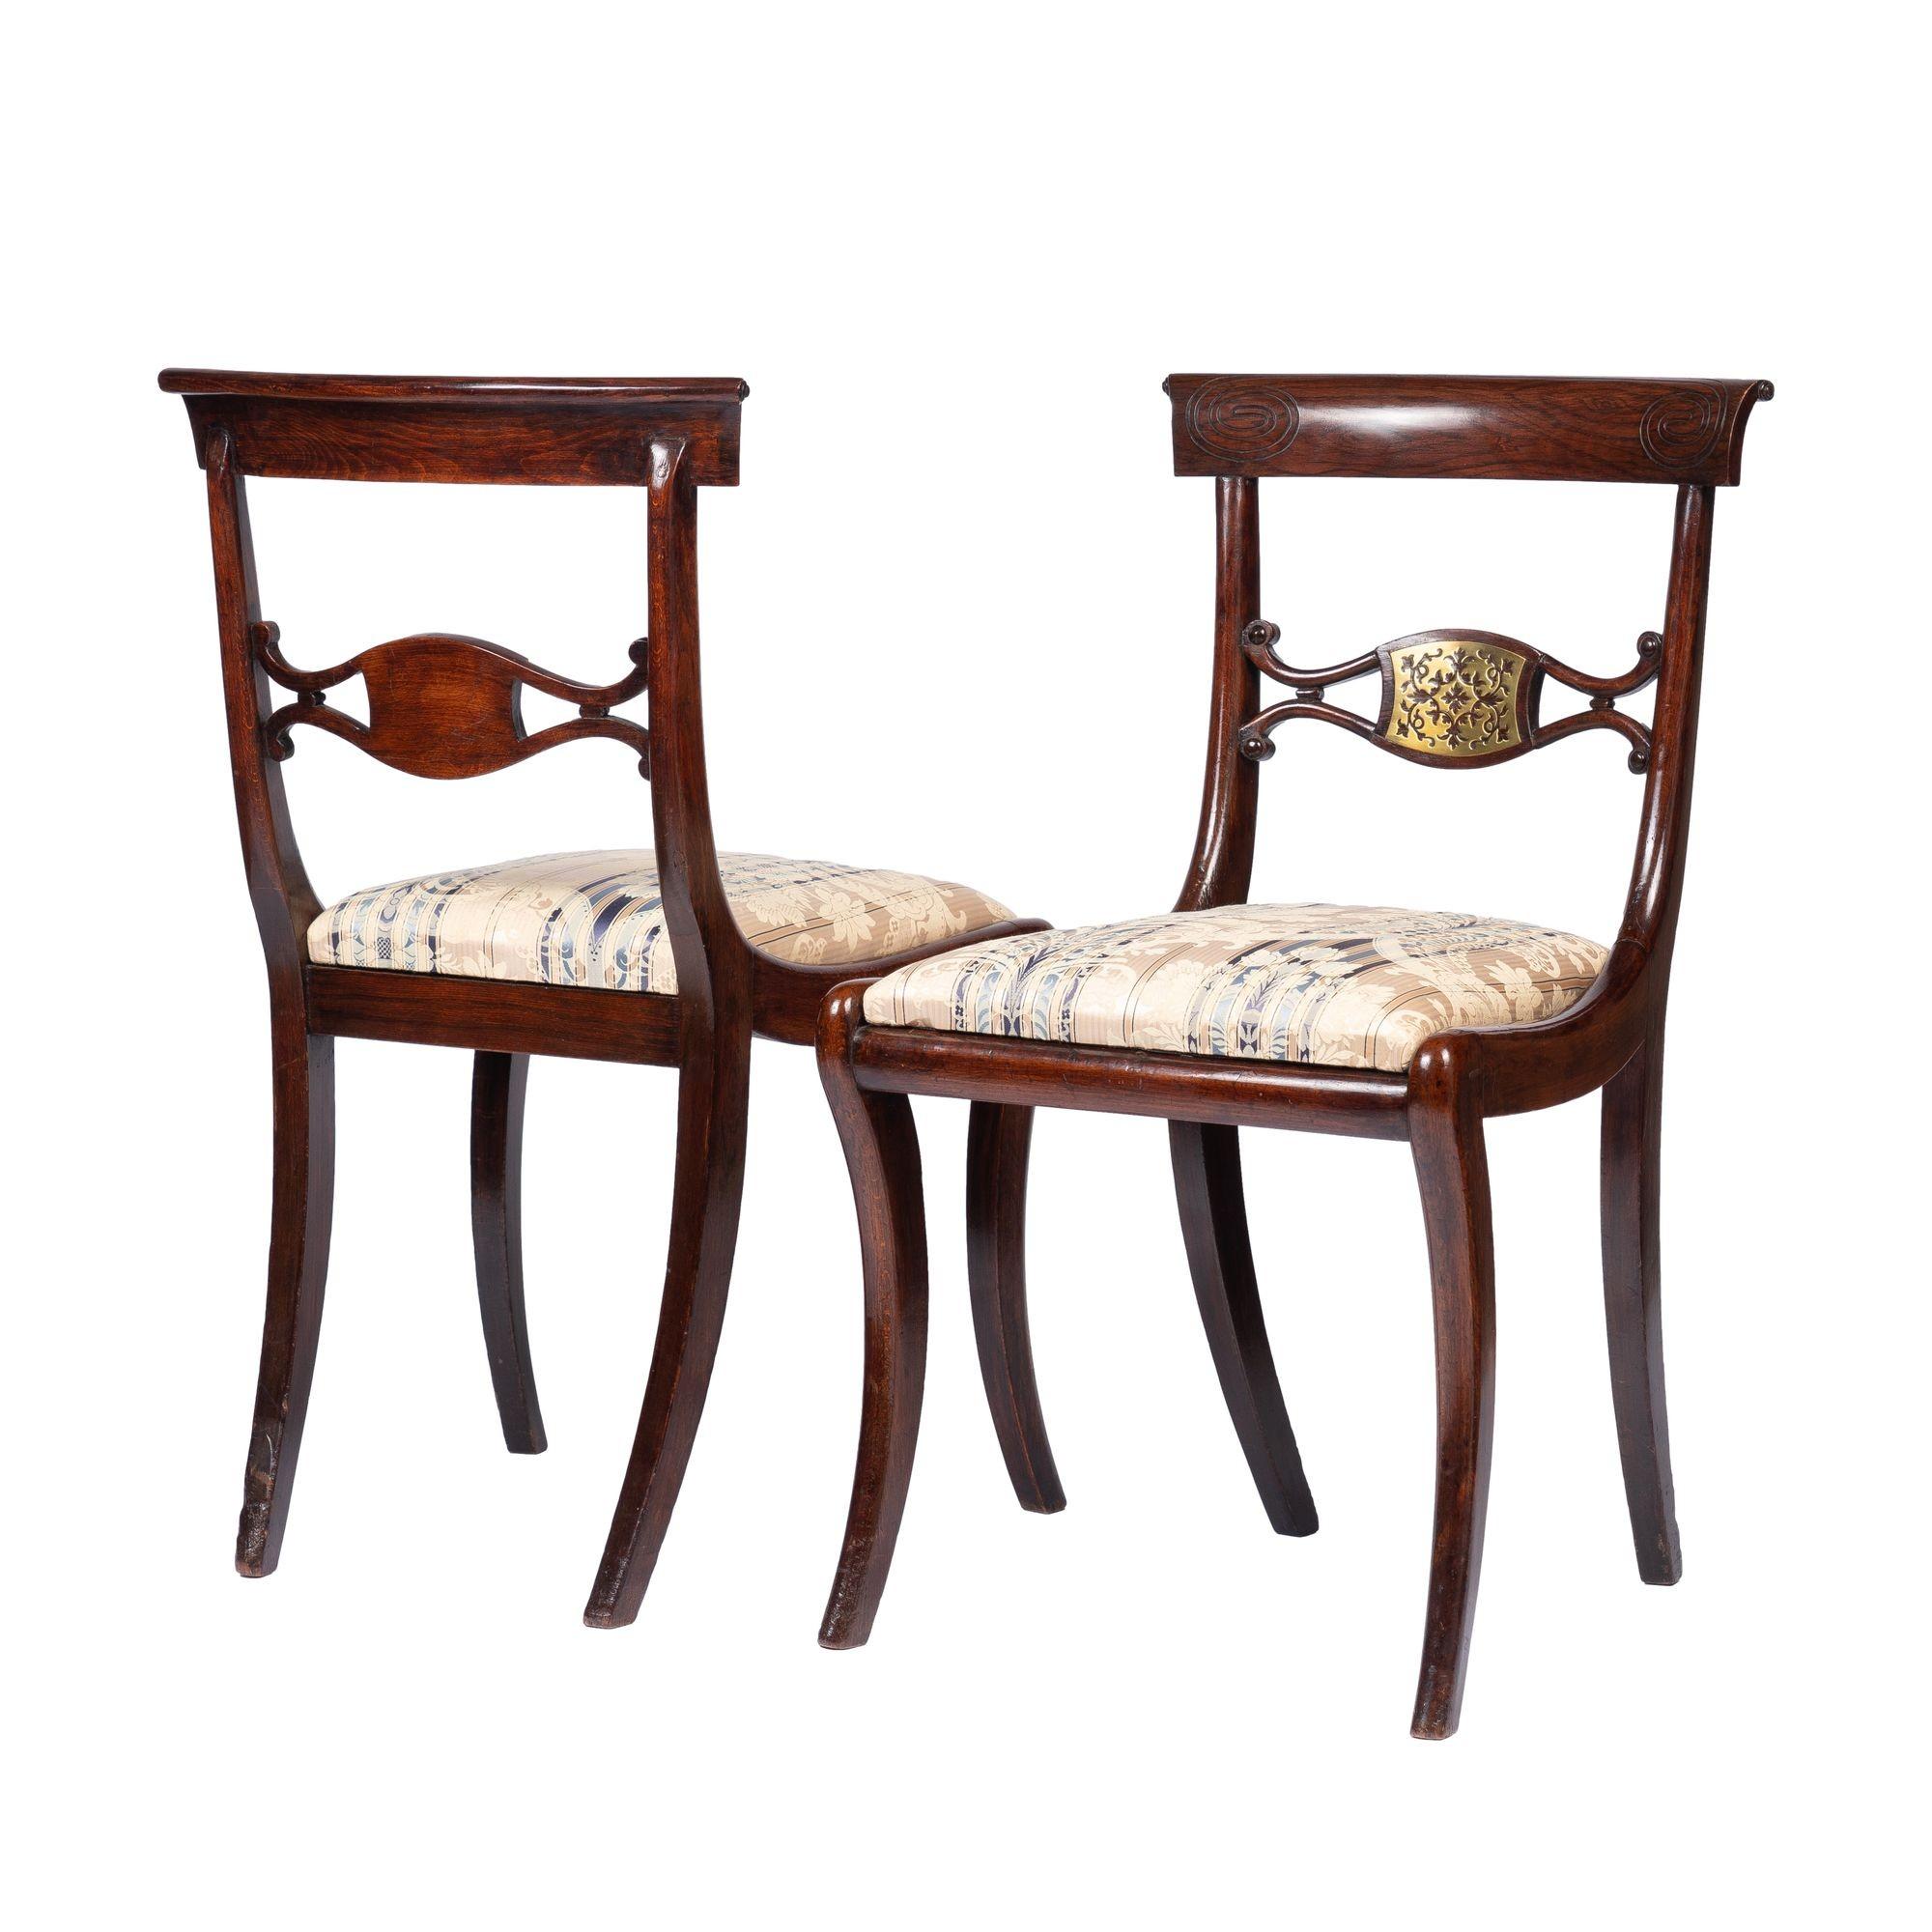 Ein Paar englische Klismos-Sessel aus der Regency-Periode mit Intarsien aus lackiertem Buchenholz und durchbrochenen Messingverzierungen in der Mitte der Rückenlehne und an den Ecken der Kammleiste. Die Stühle sind mit gepolsterten Schlupfsitzen auf